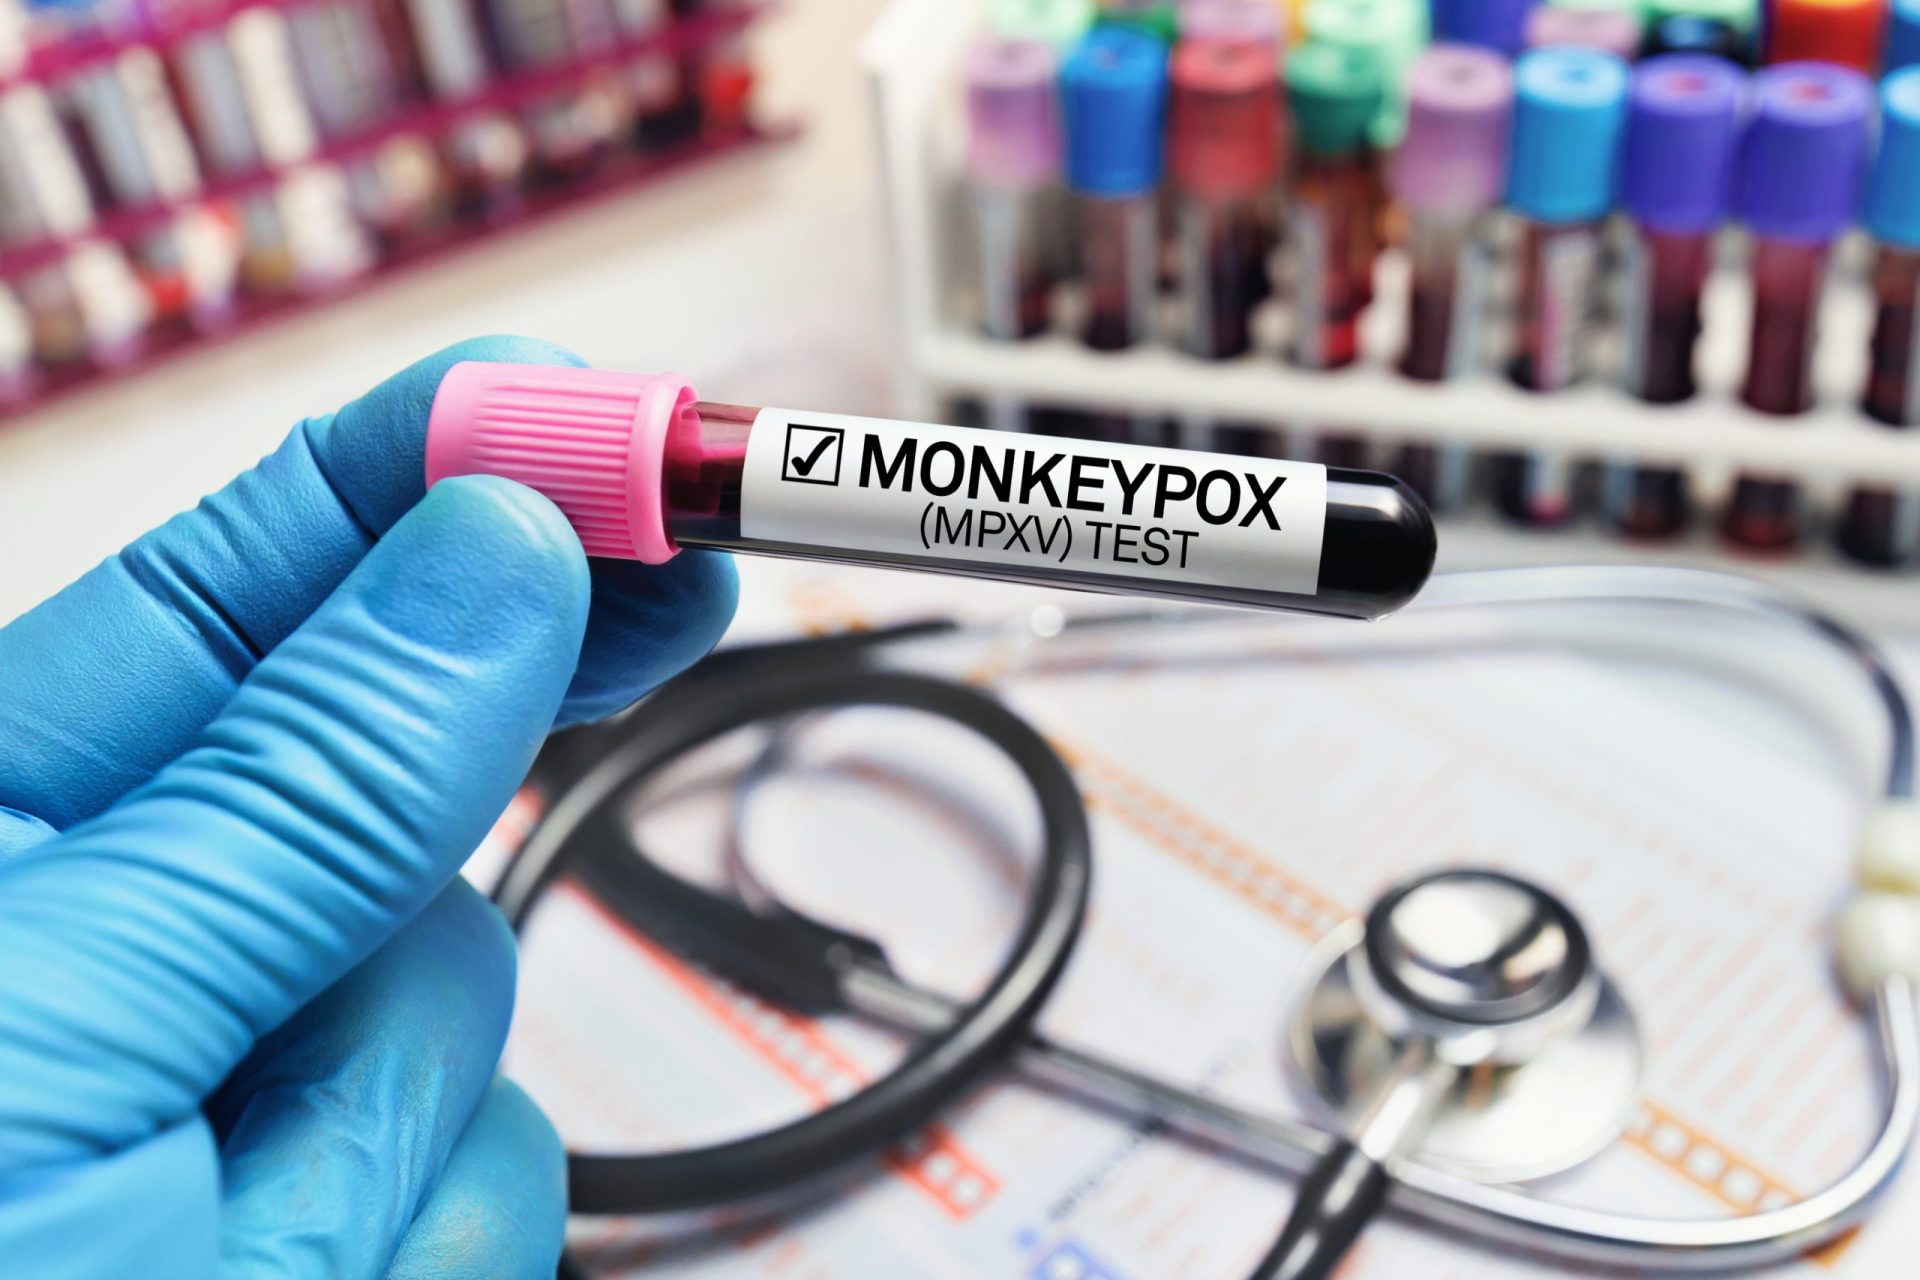 Confirmados mais 13 casos de Monkeypox em Portugal